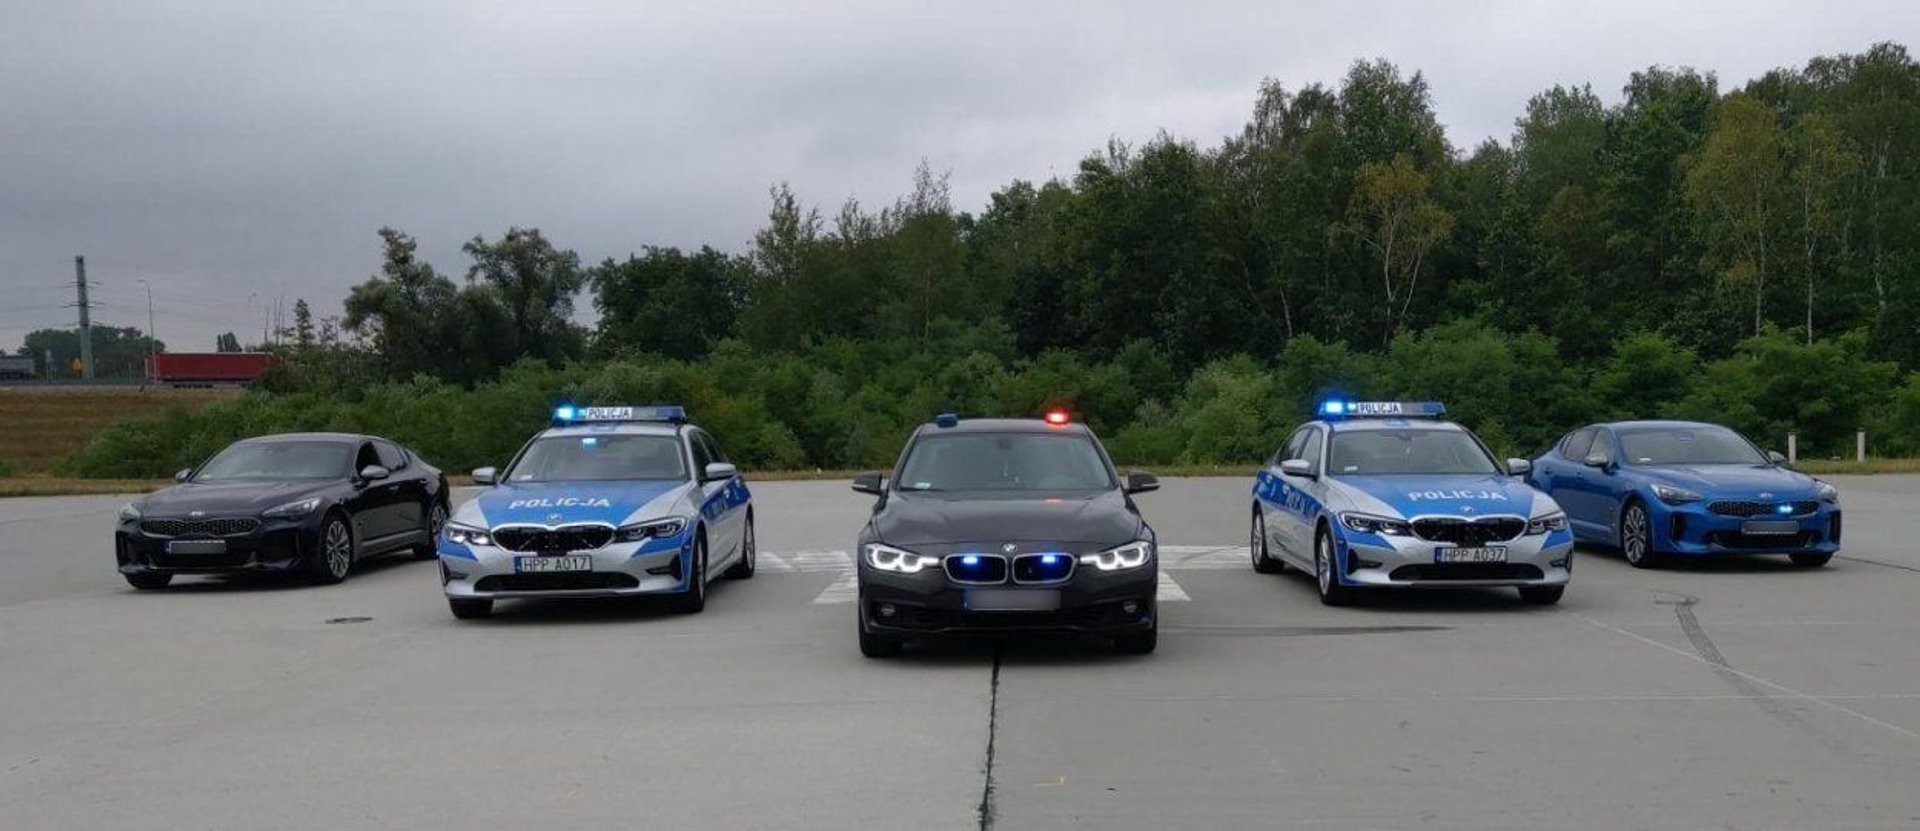 Policja nowe pojazdy